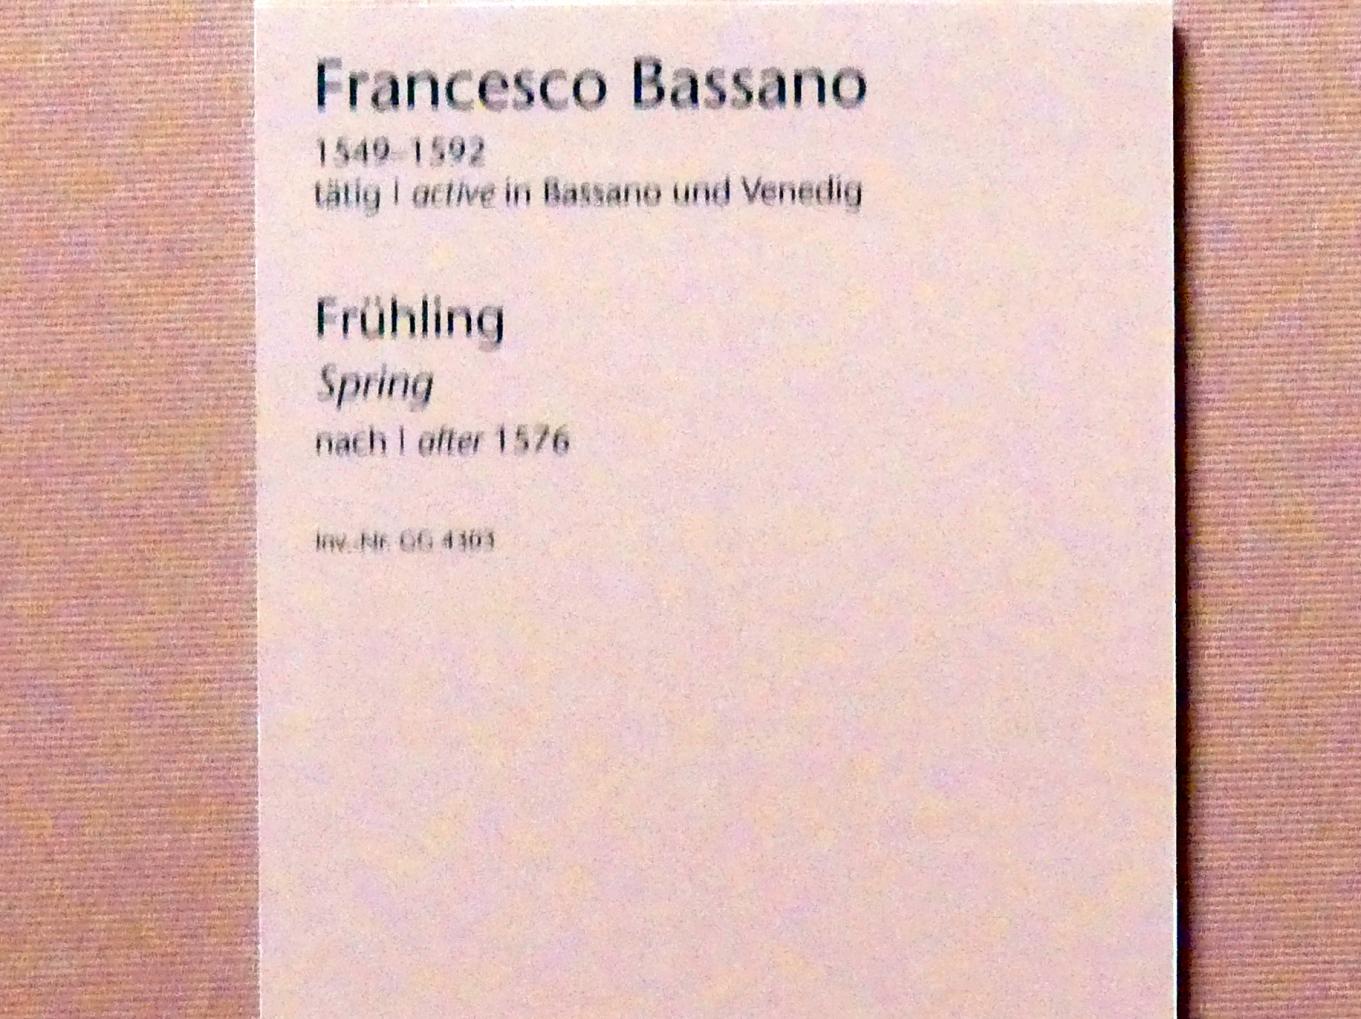 Francesco Bassano der Jüngere (1572–1582), Frühling, Wien, Kunsthistorisches Museum, Kabinett 9, nach 1576, Bild 2/2